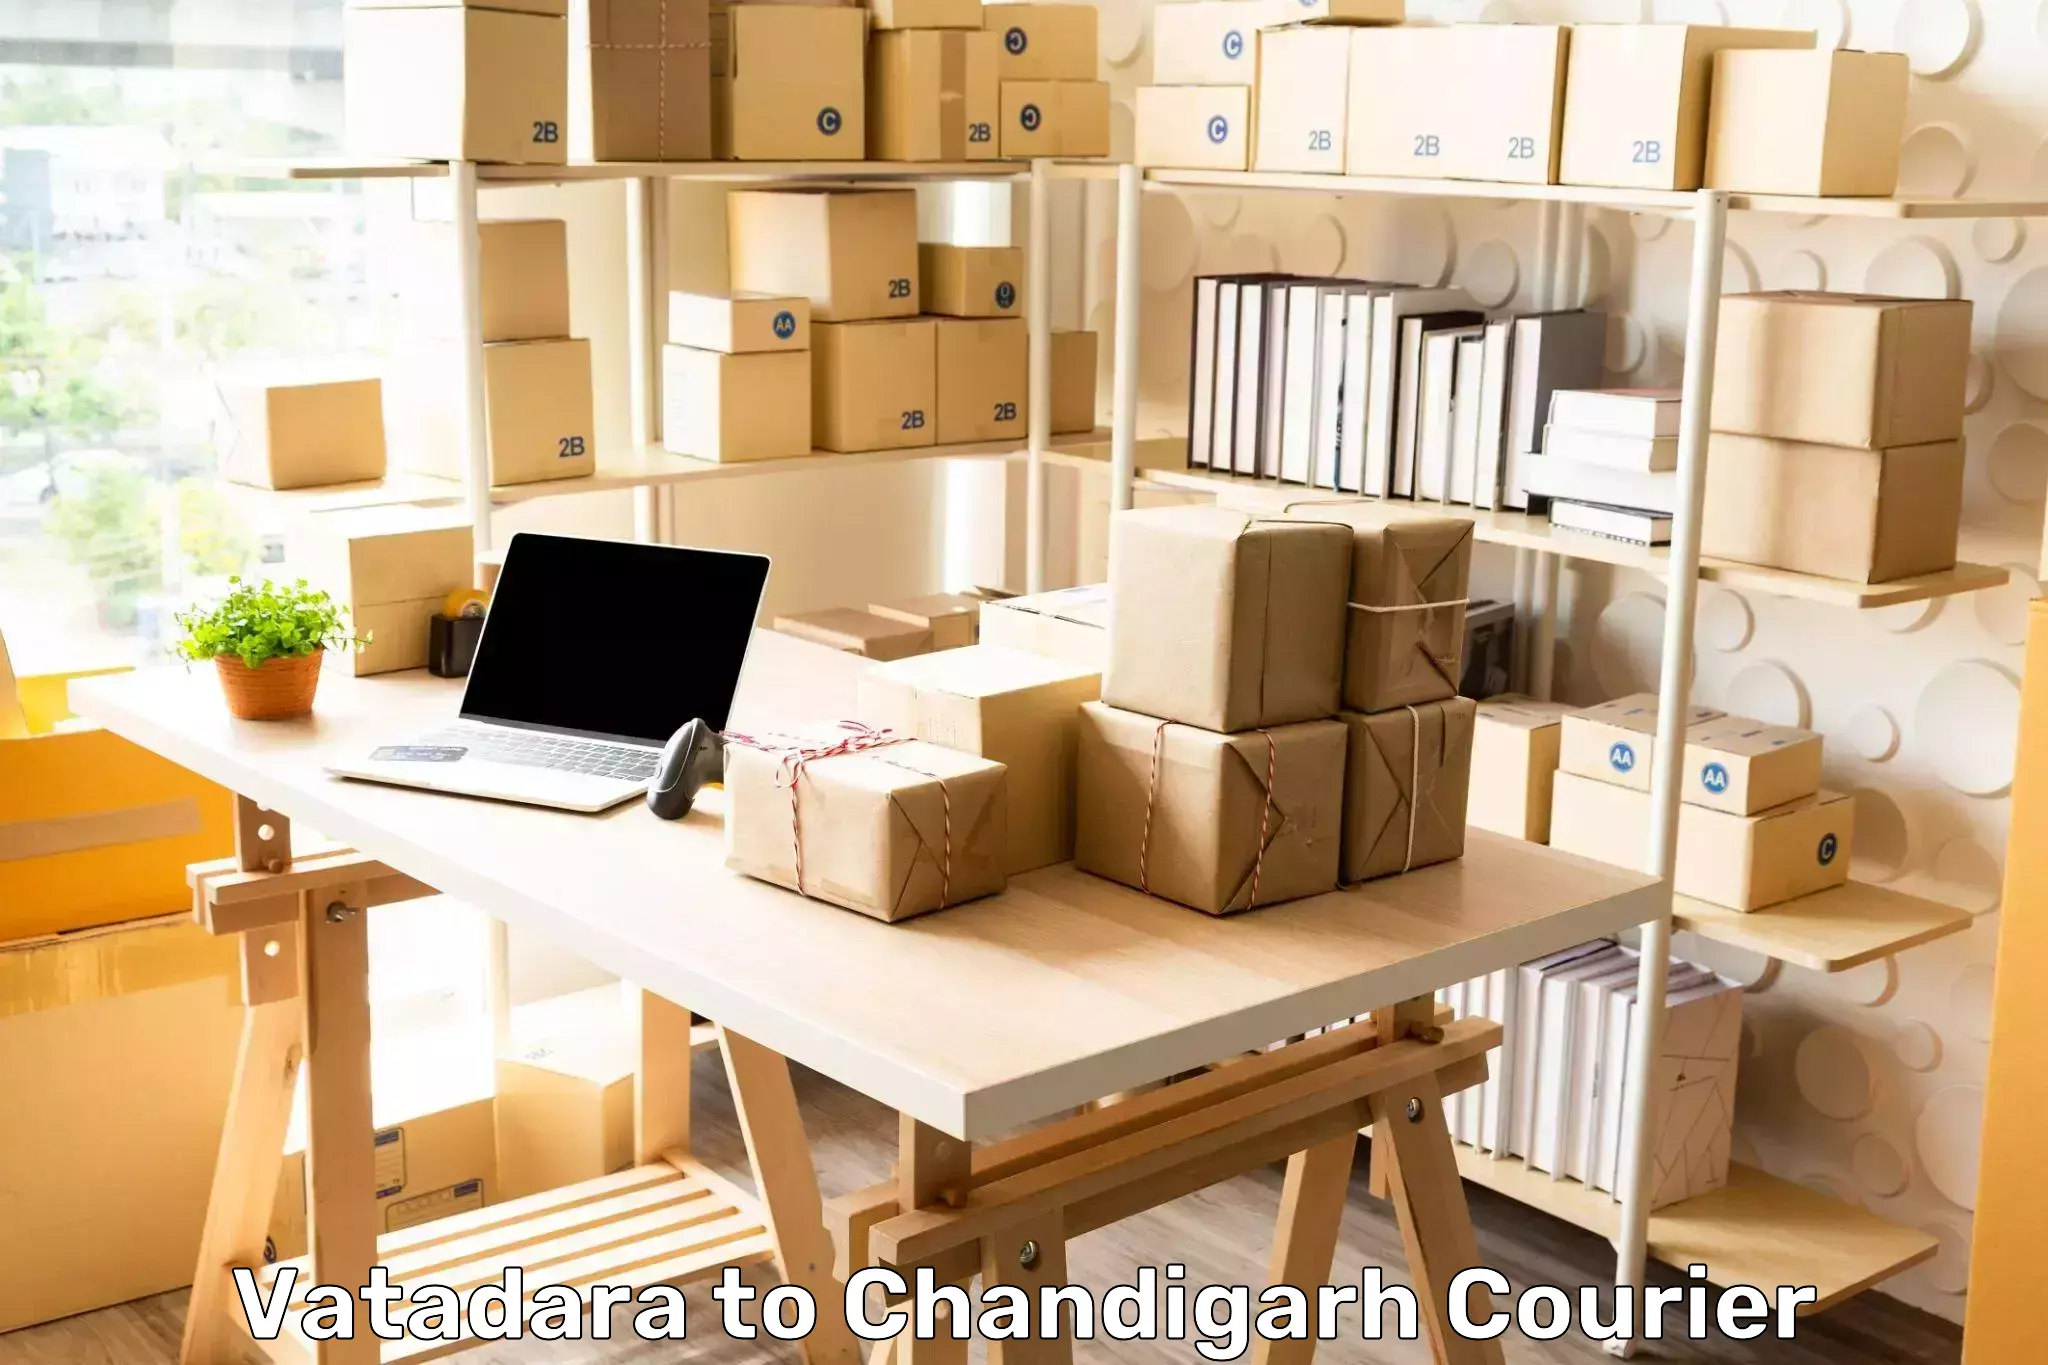 Business shipping needs Vatadara to Chandigarh